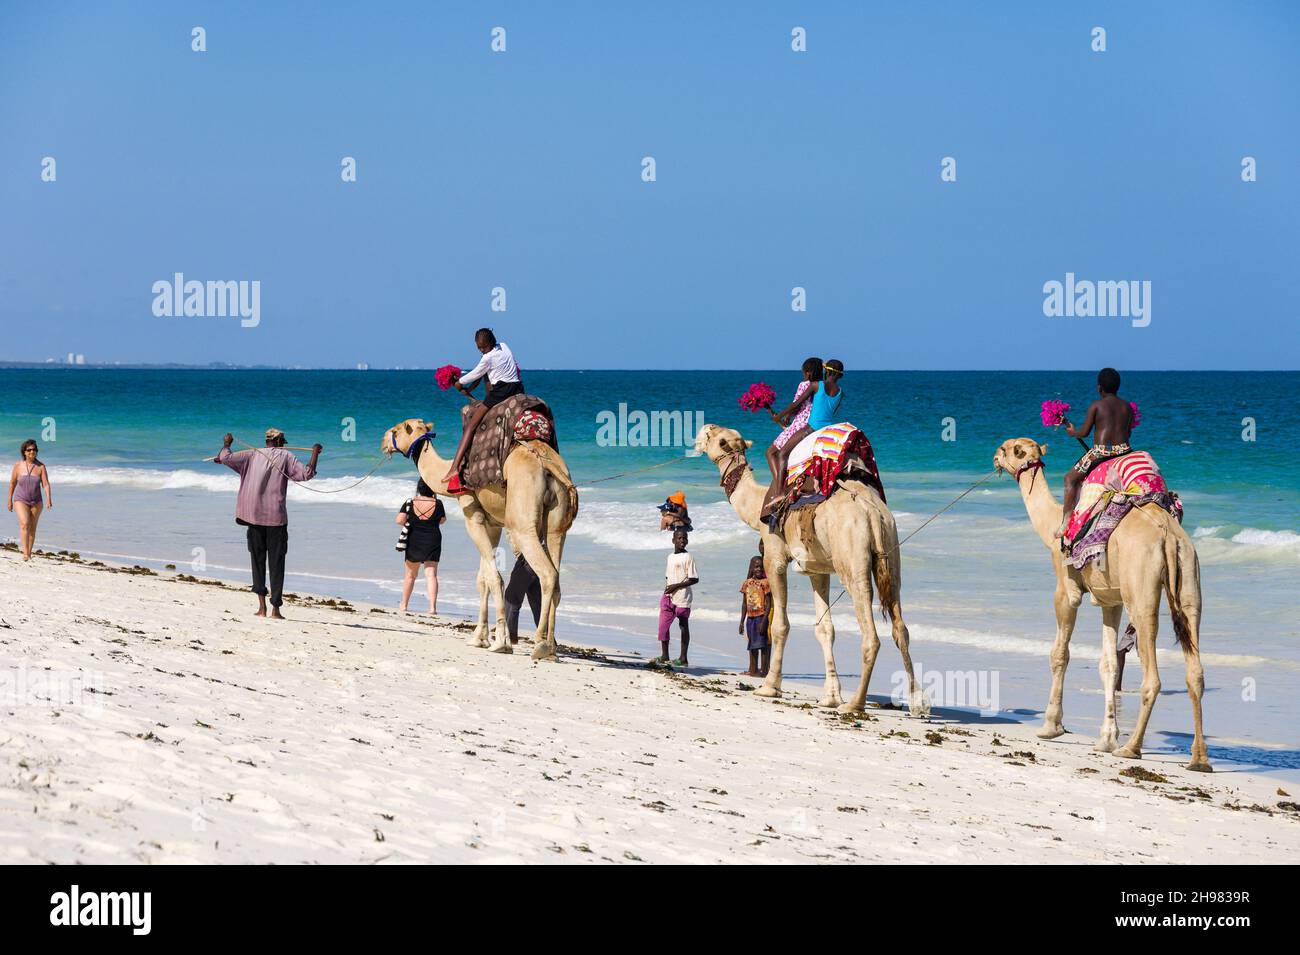 Enfants kenyans en train de faire des promenades à dos de chameau sur trois chameaux sur la plage au bord de l'océan Indien, Diani, Kenya Banque D'Images